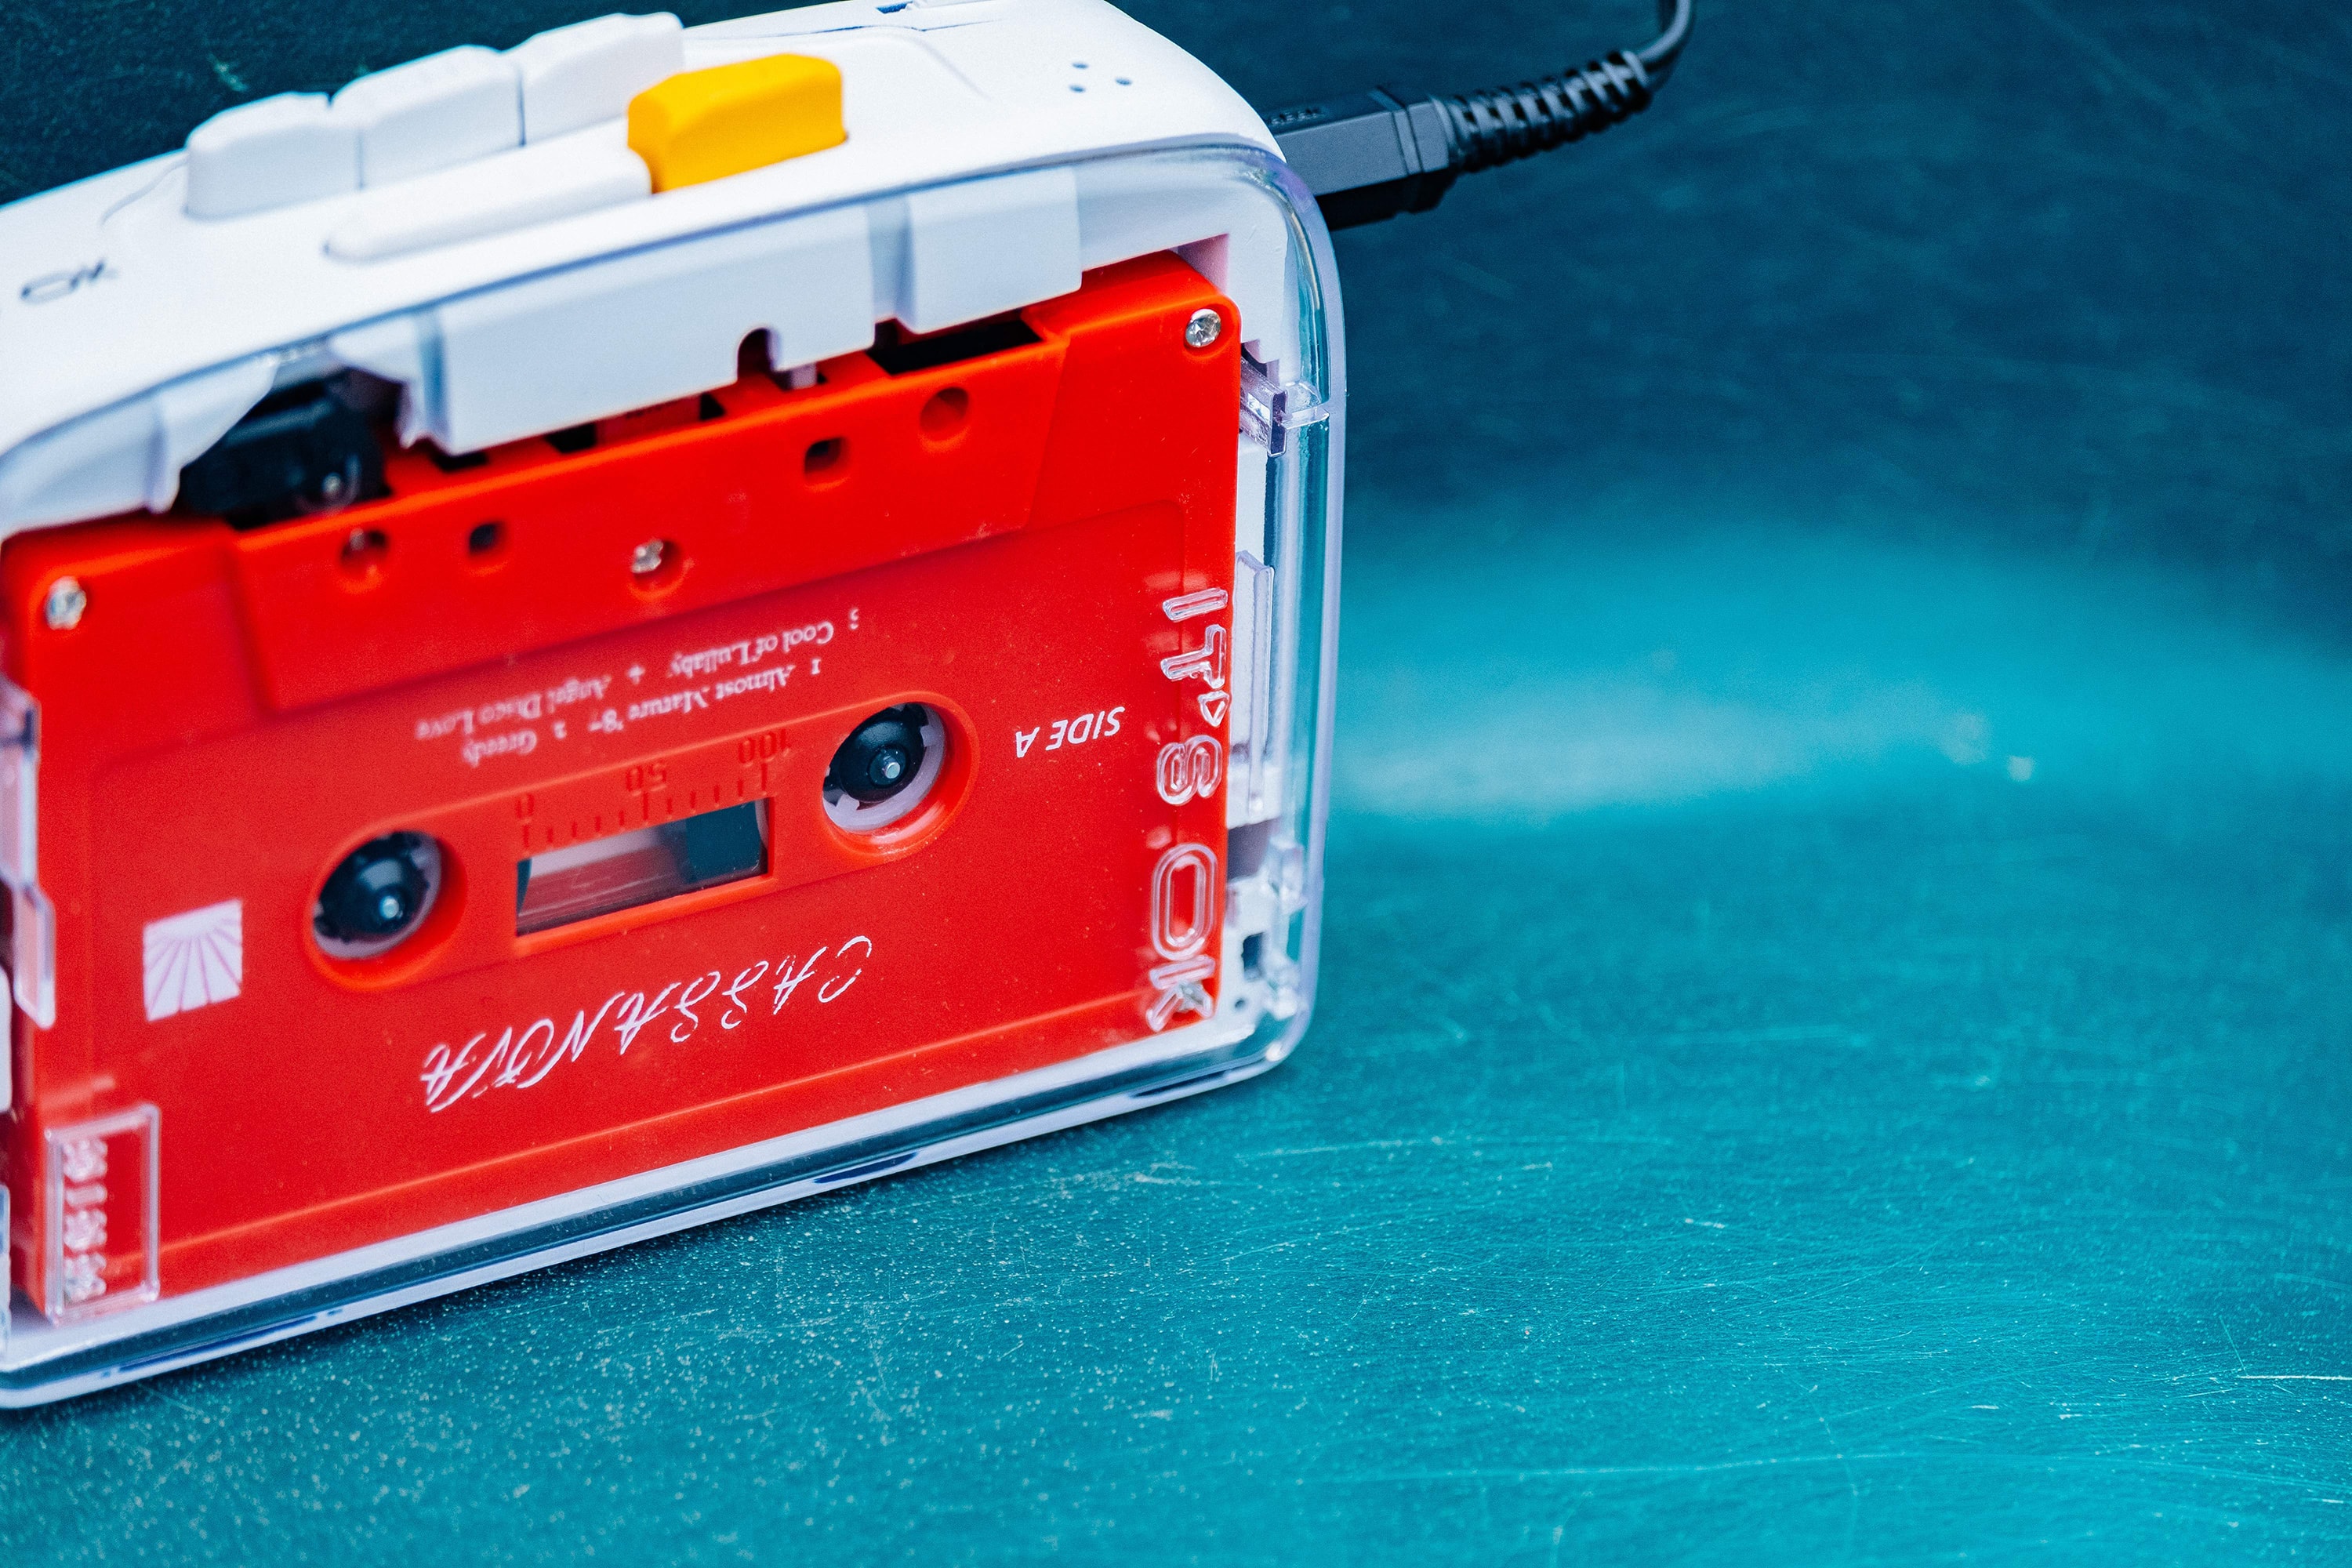 復刻懷舊－IT’S OK 推出全球首部藍牙 5.0 可攜式卡式錄音機